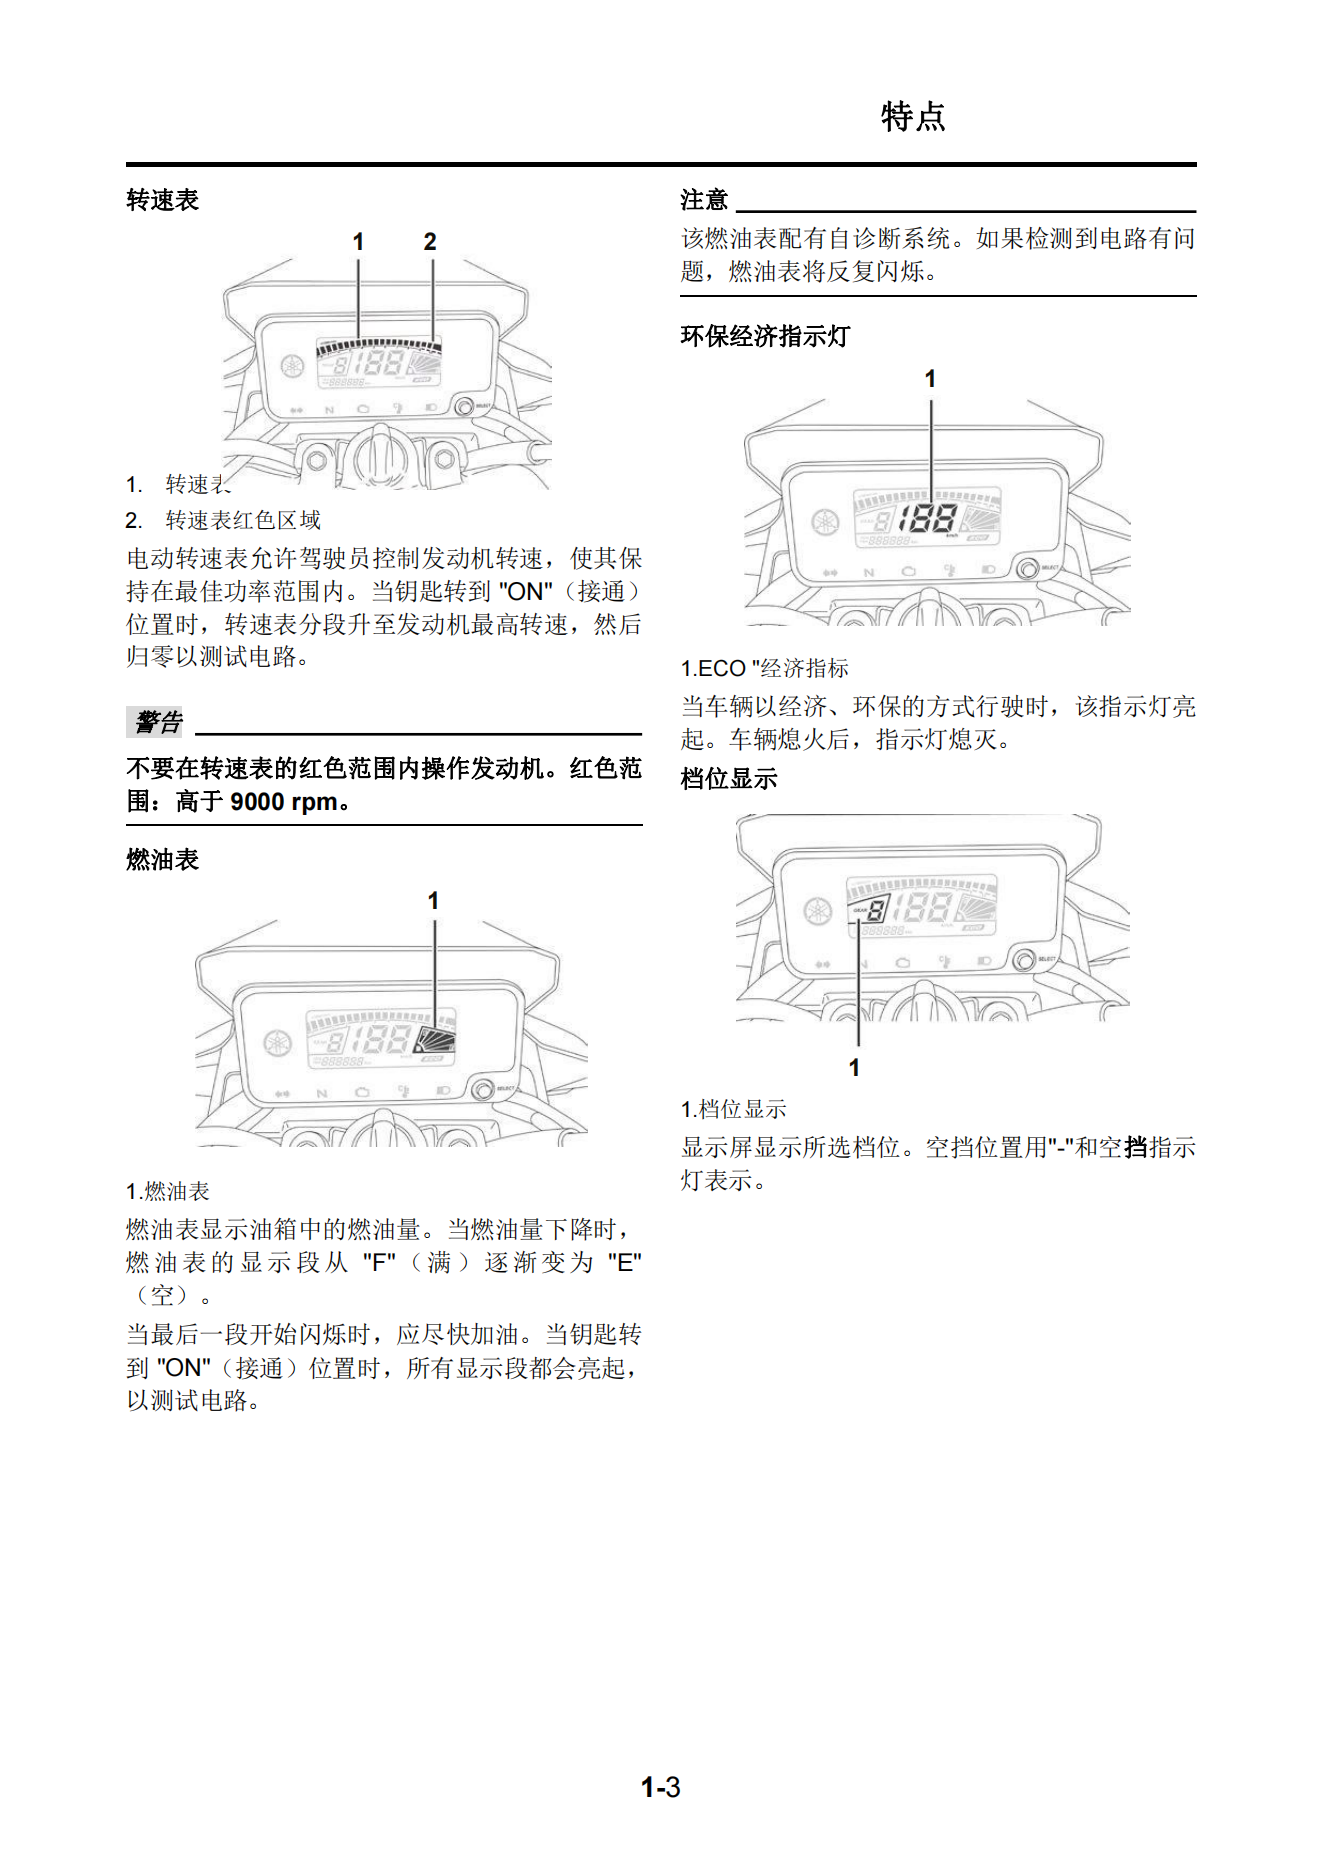 简体中文2020年雅马哈ybr150维修手册factor 150维修手册插图1